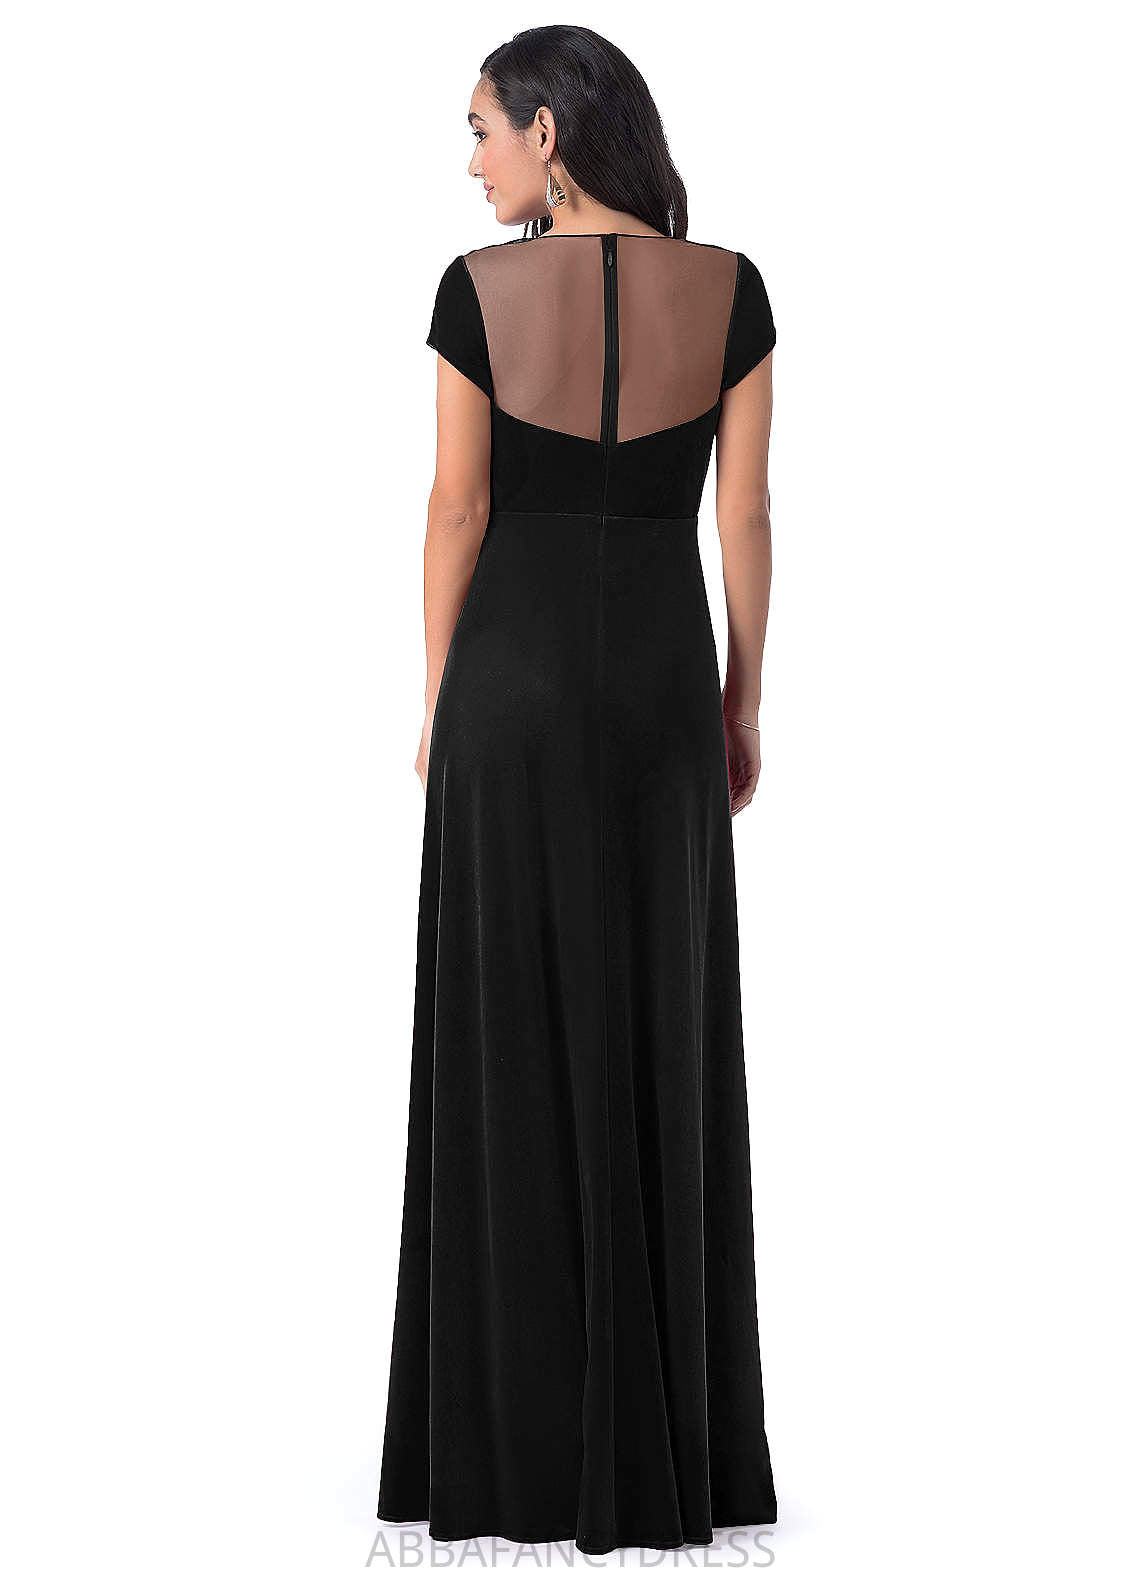 Arely Sleeveless V-Neck A-Line/Princess Floor Length Natural Waist Bridesmaid Dresses